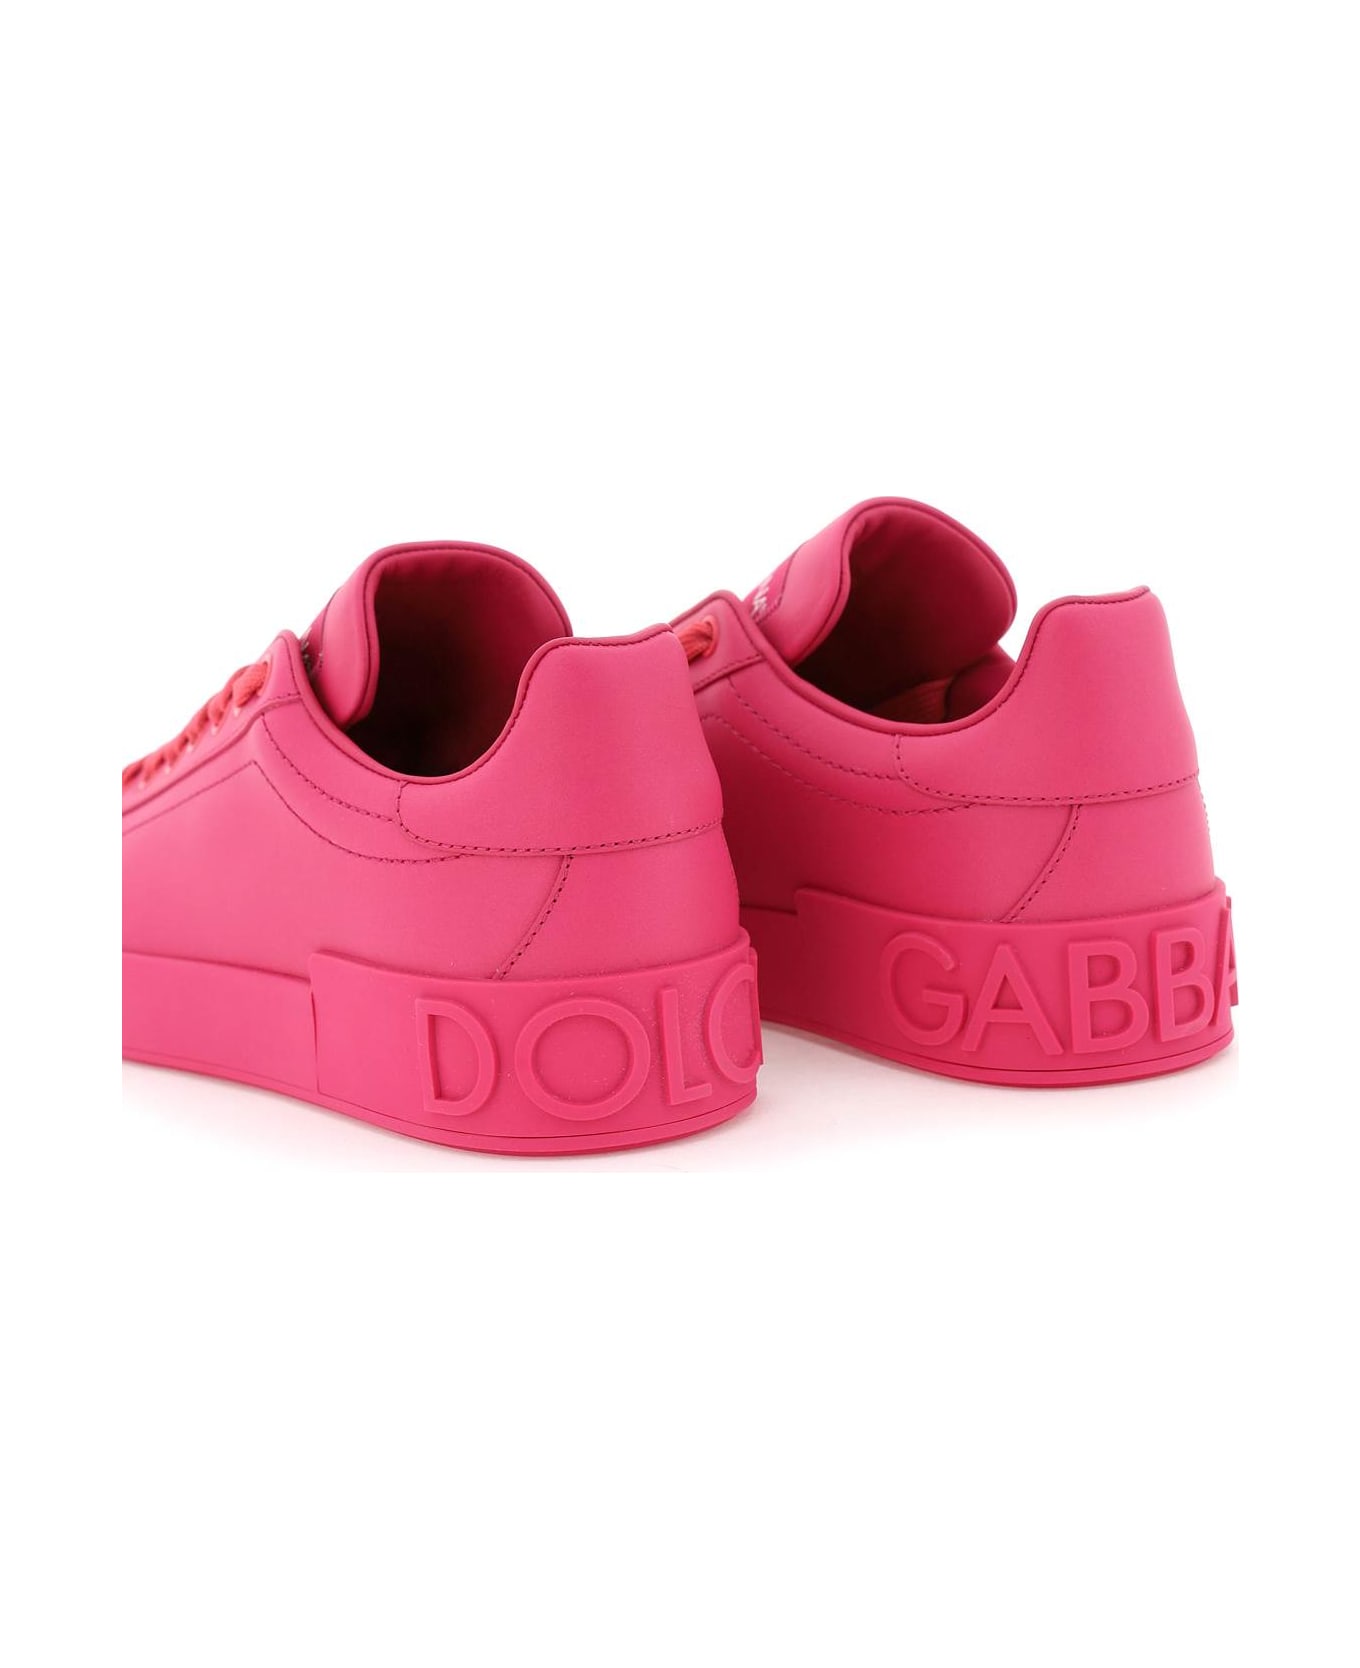 Dolce & Gabbana 'portofino' Sneakers - Fucsia